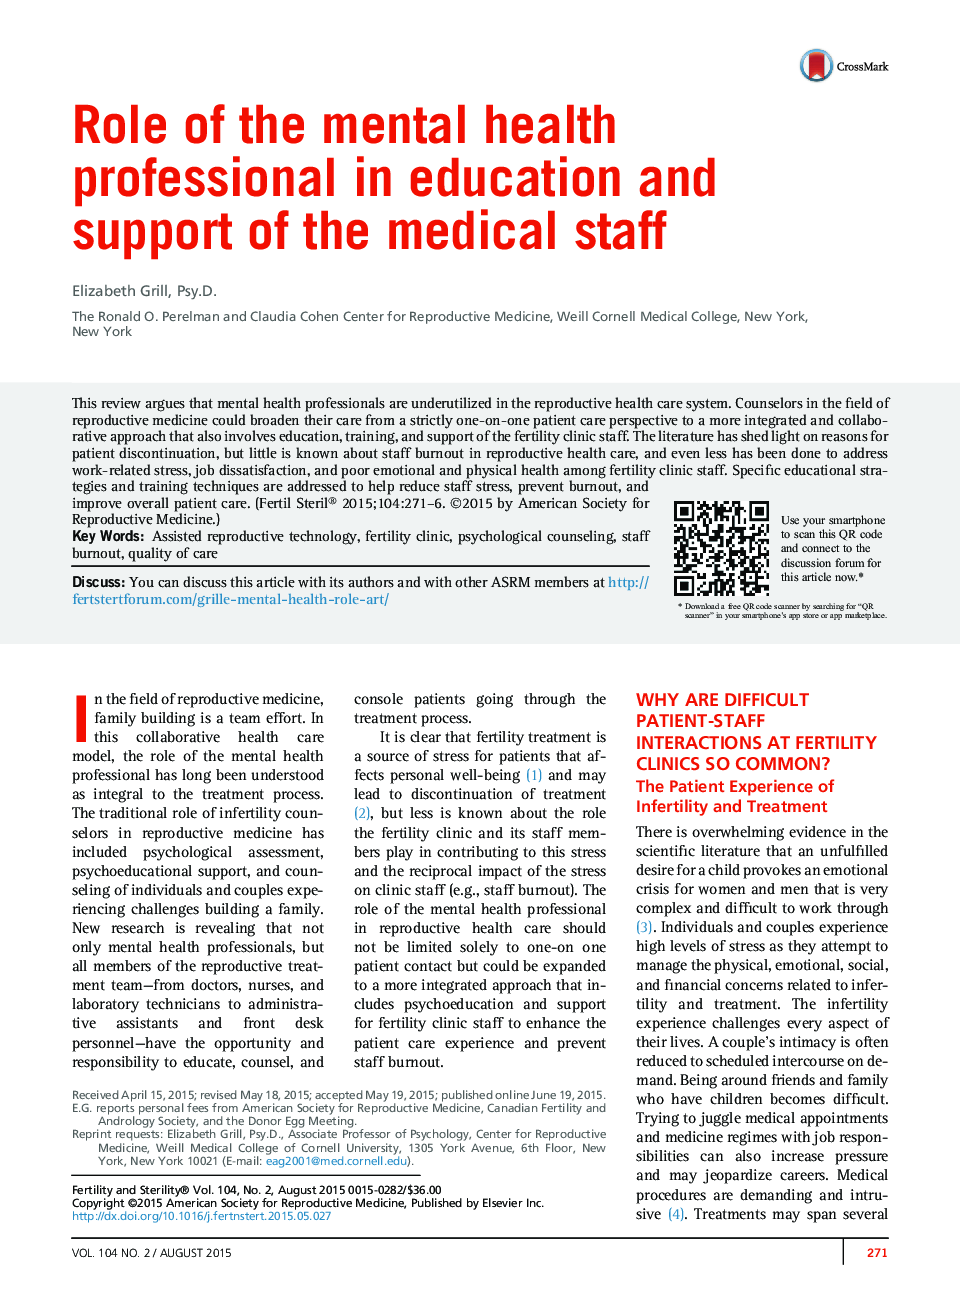 نقش حرفه ای بهداشت روانی در آموزش و پشتیبانی کارکنان پزشکی 